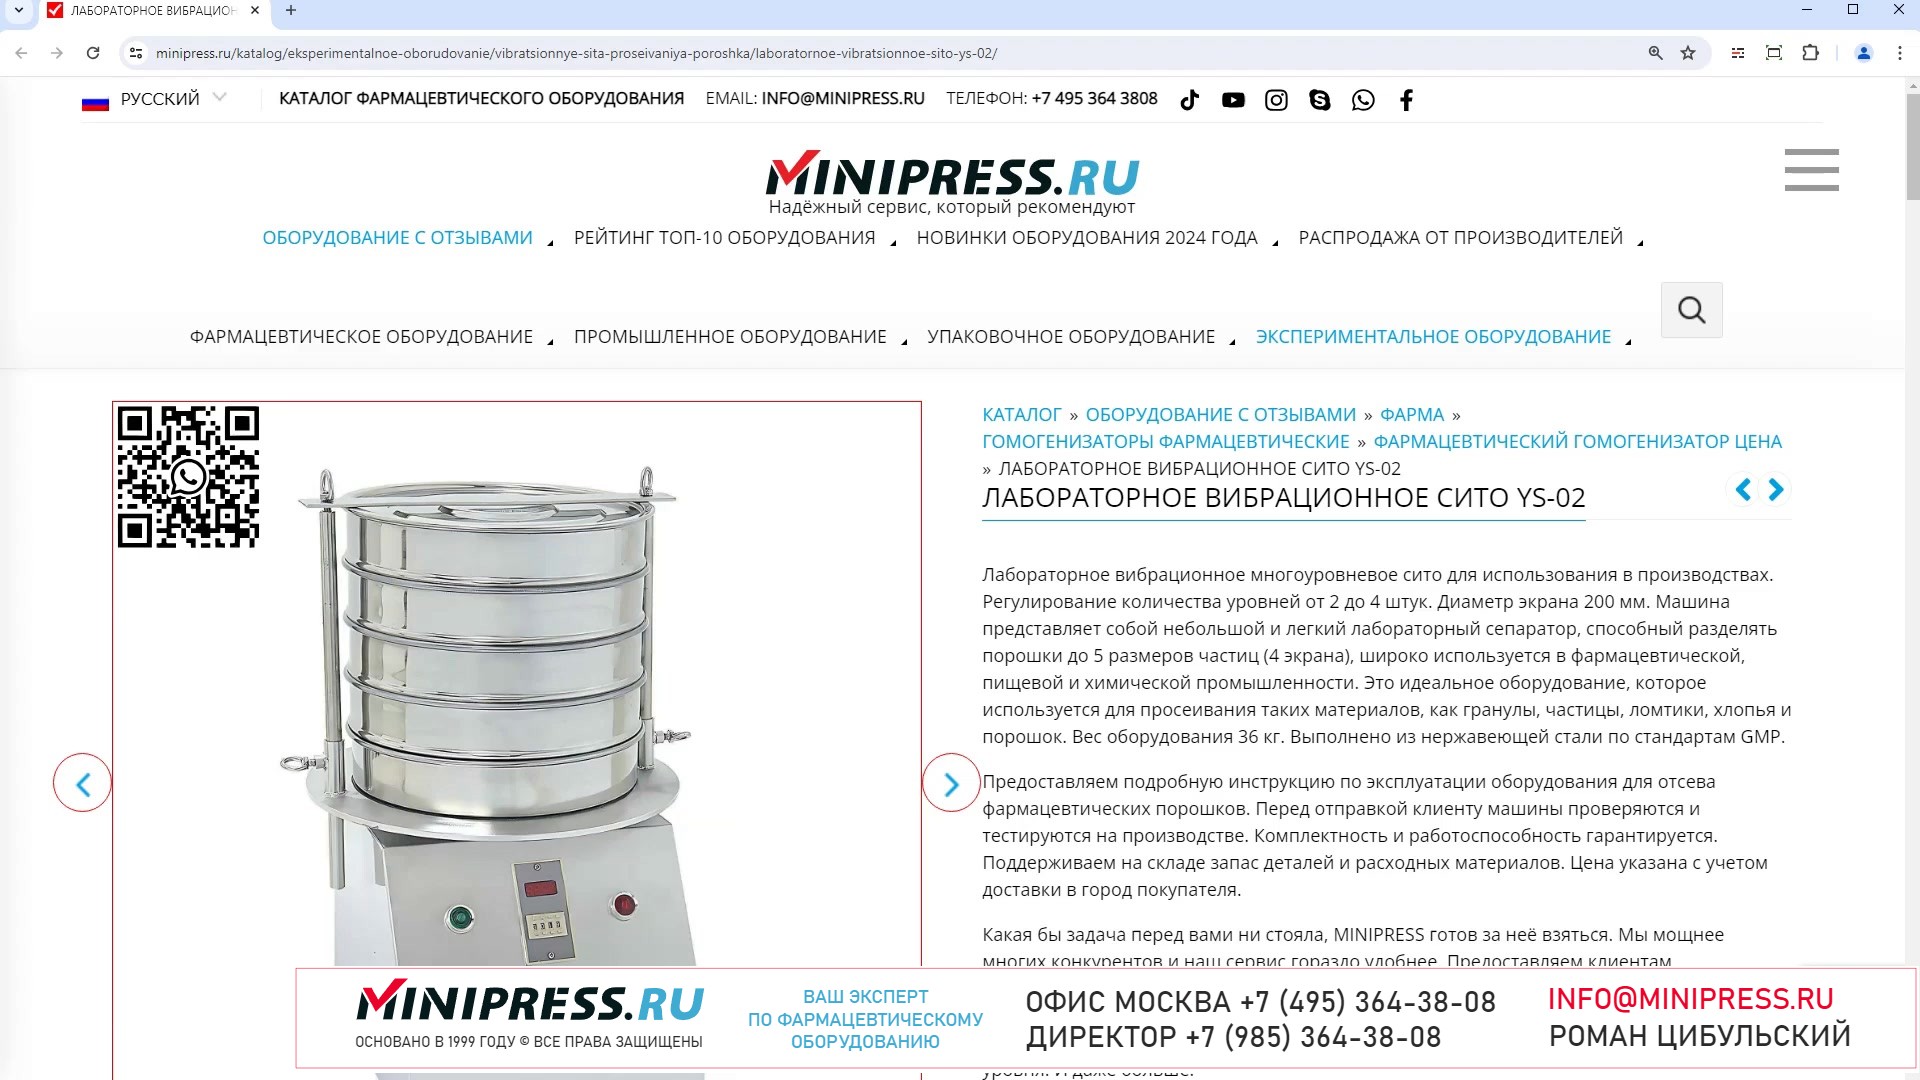 Minipress.ru Лабораторное вибрационное сито YS-02